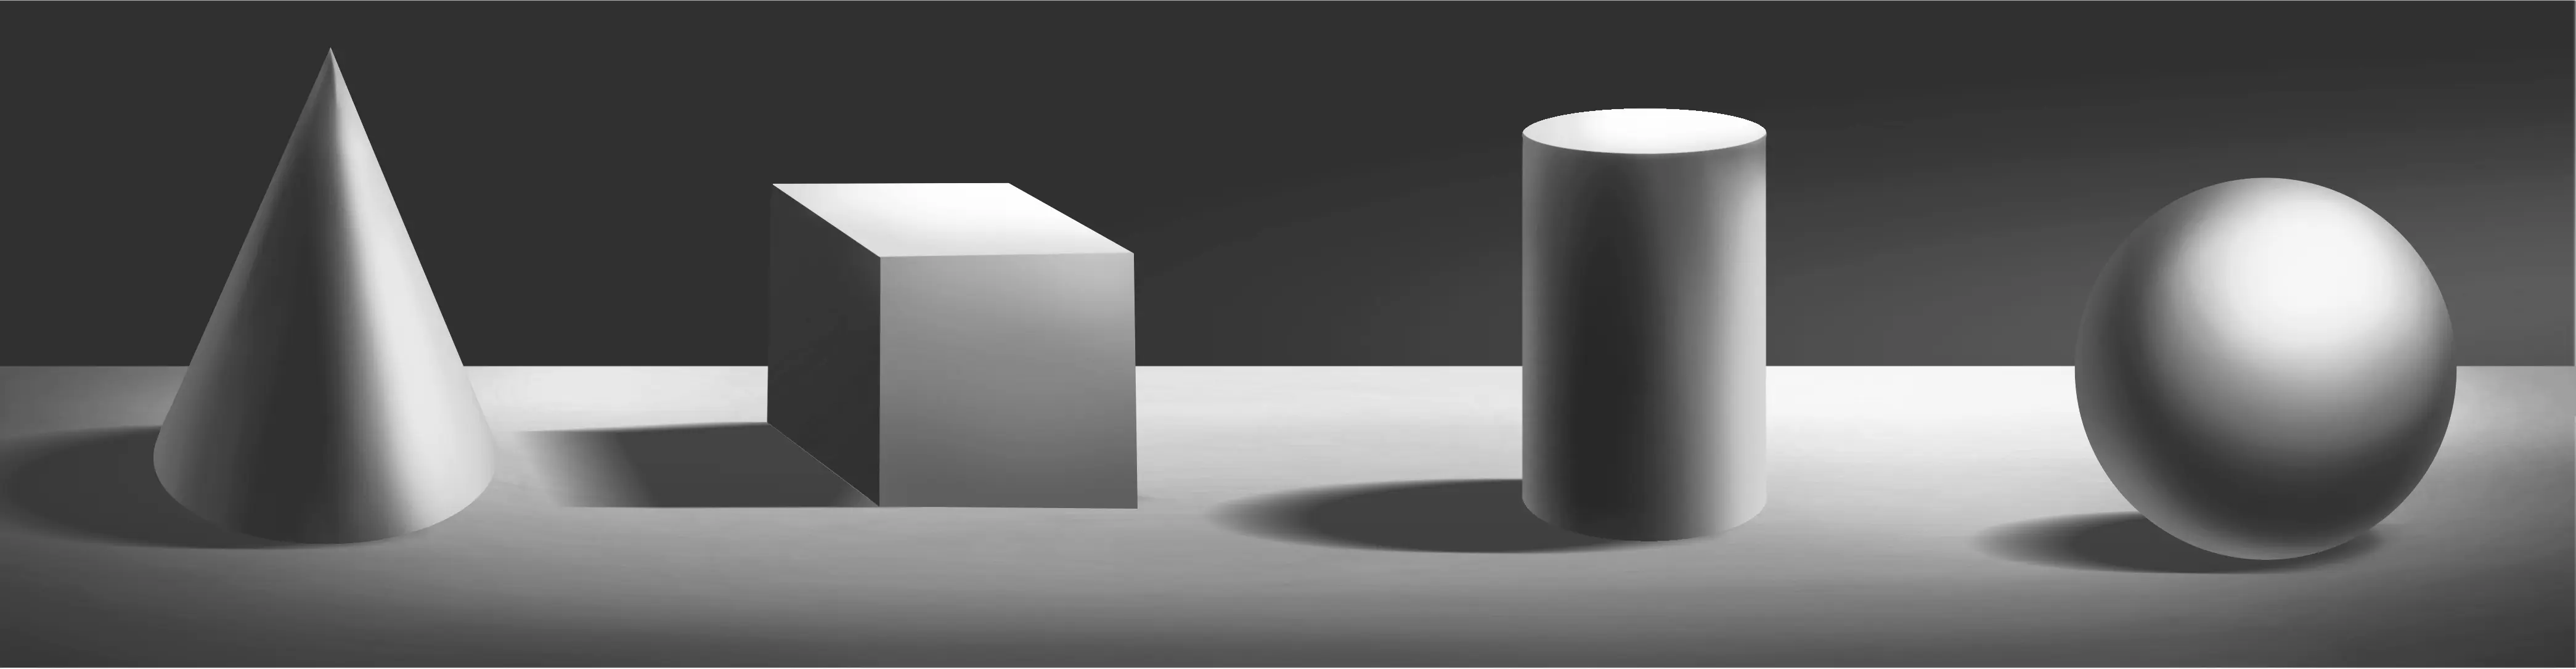 exemples de volumes basiques pour illustrer l’ombre et la lumière